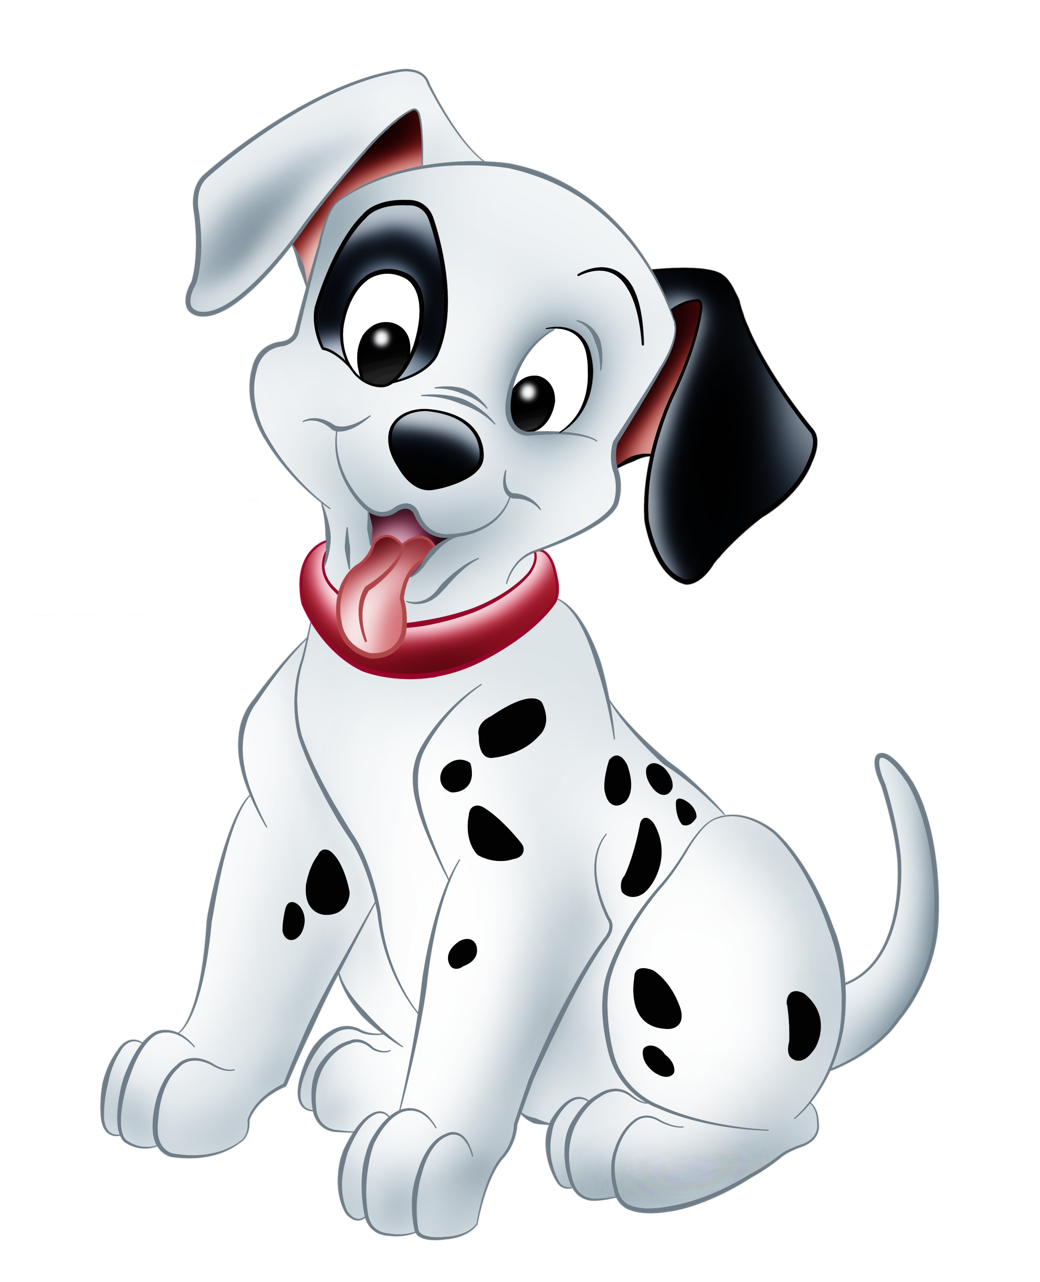 The Puppy Dalmatians Picture De Dog Vil PNG Image